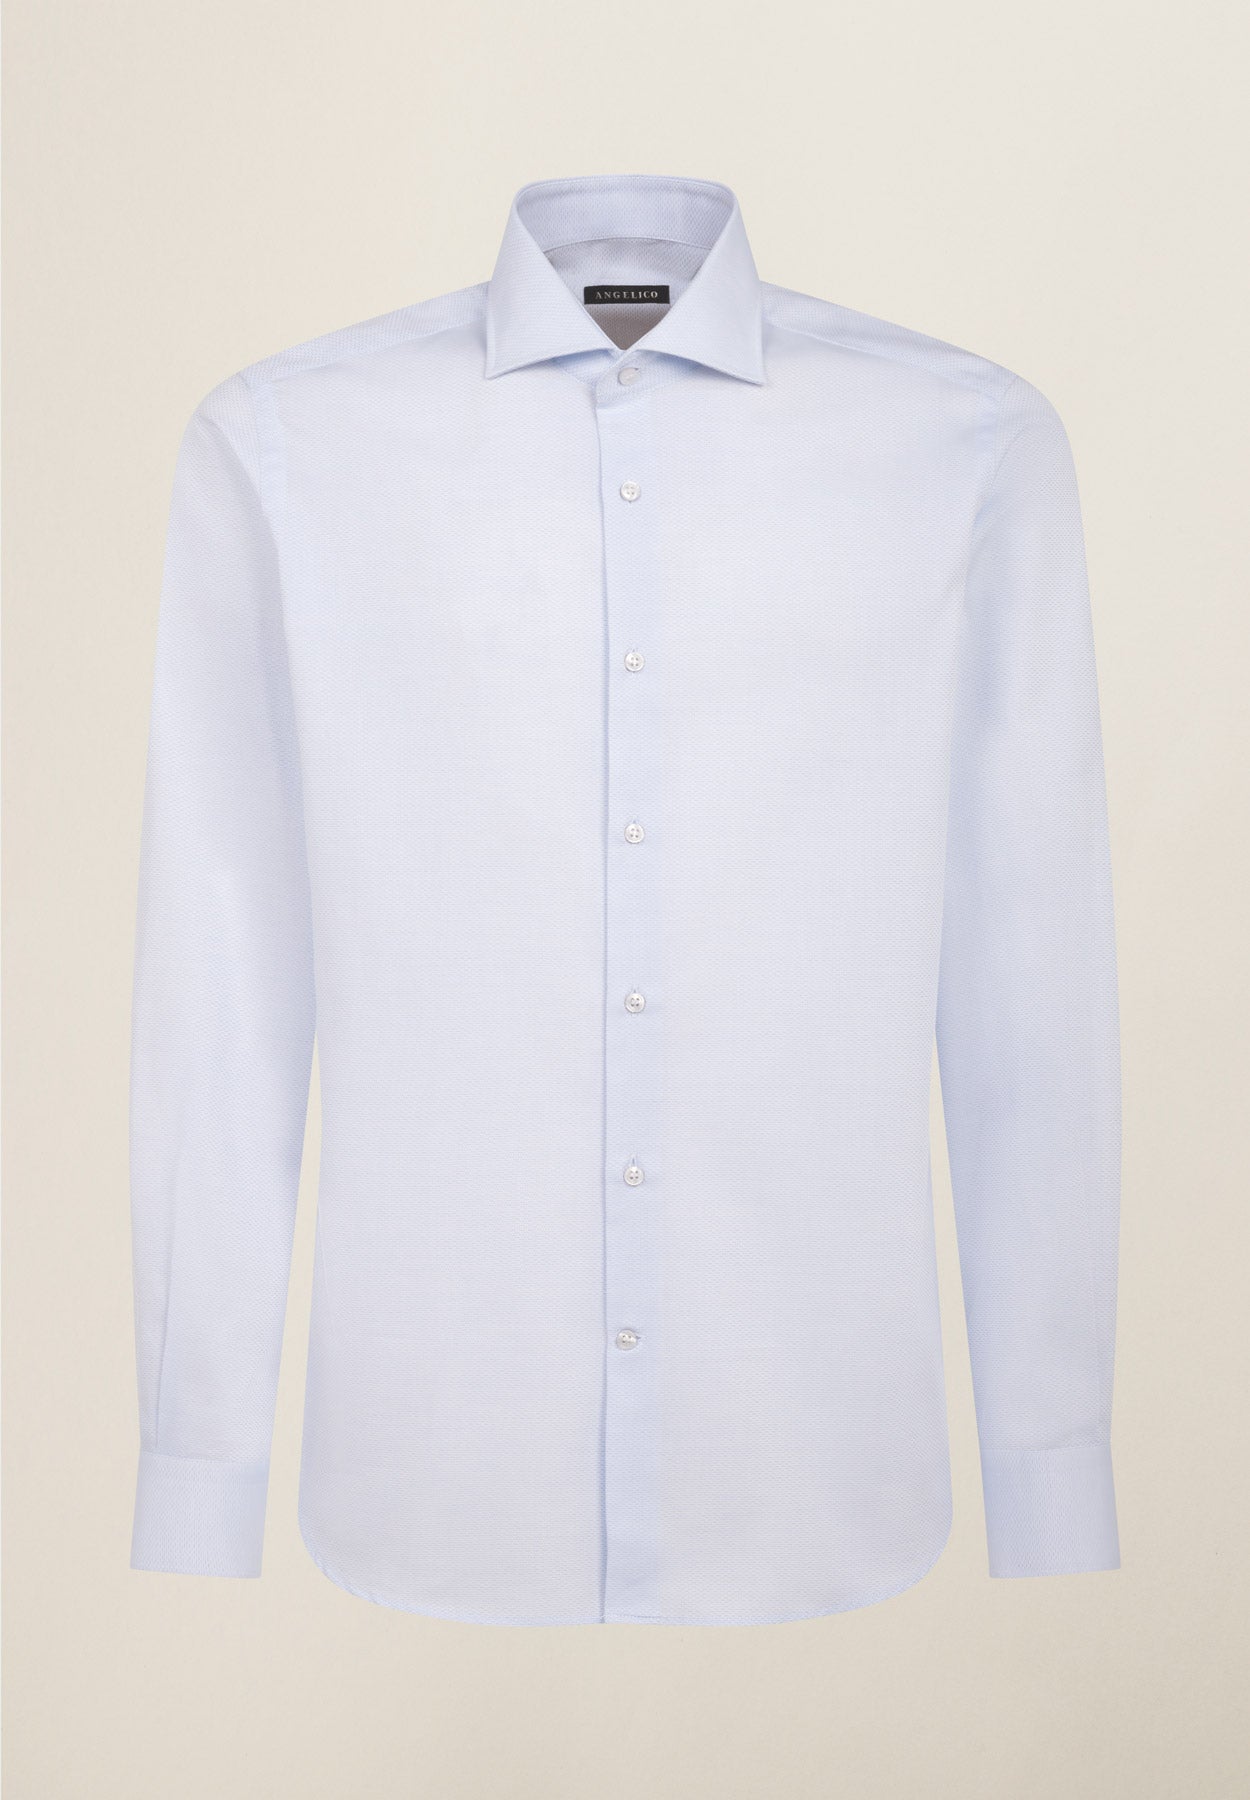 Light blue micro pattern regular fit cotton shirt